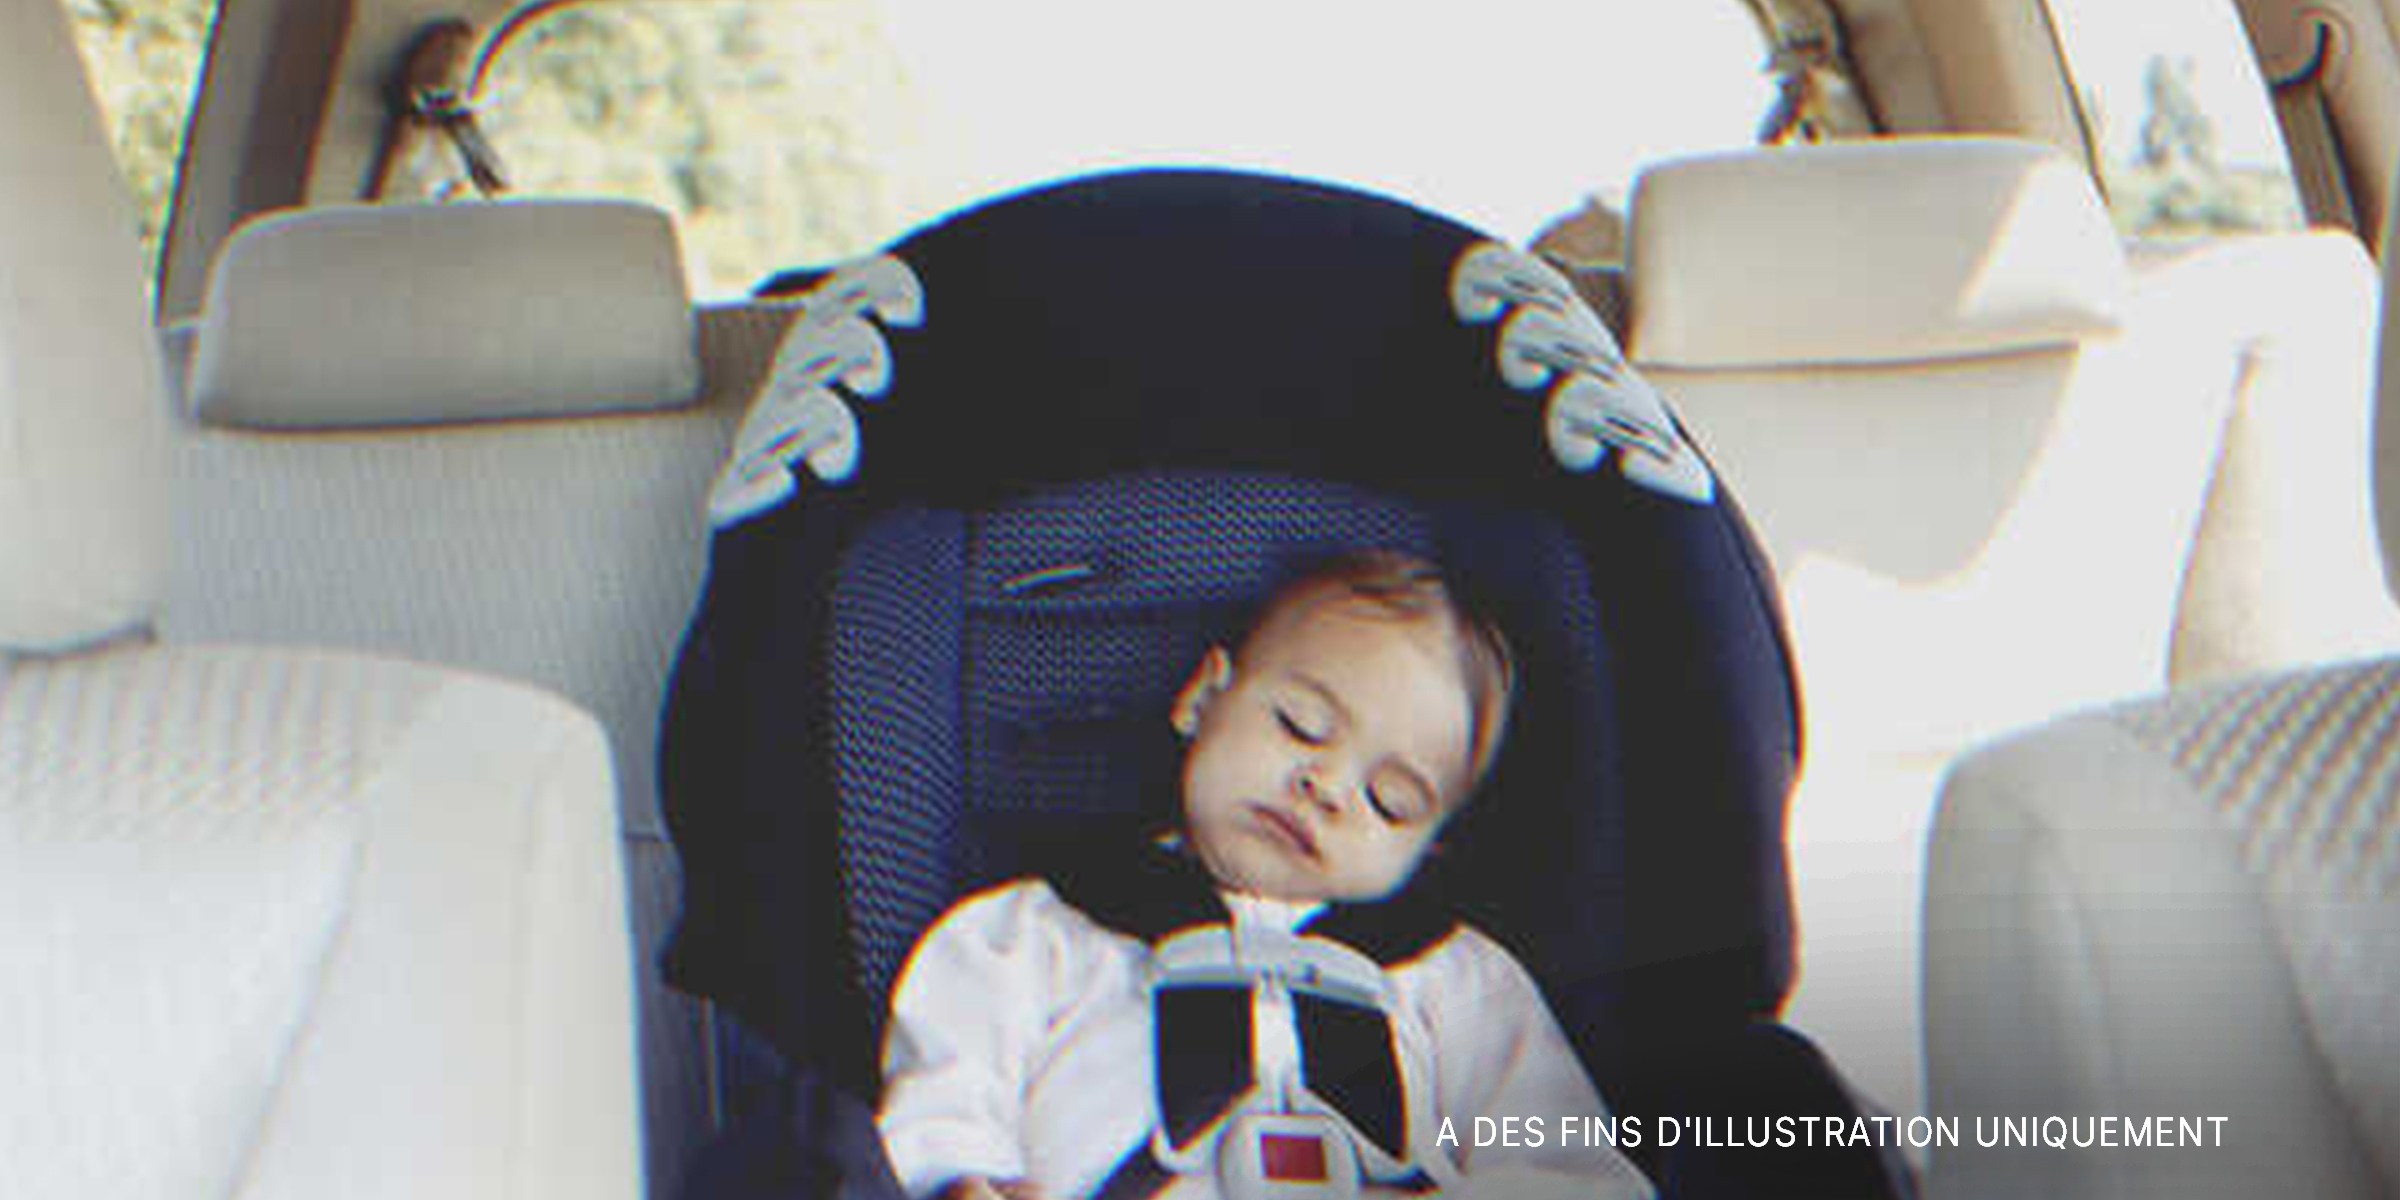 Un bébé endormi sur la banquette arrière d'une voiture | Source : Getty Images